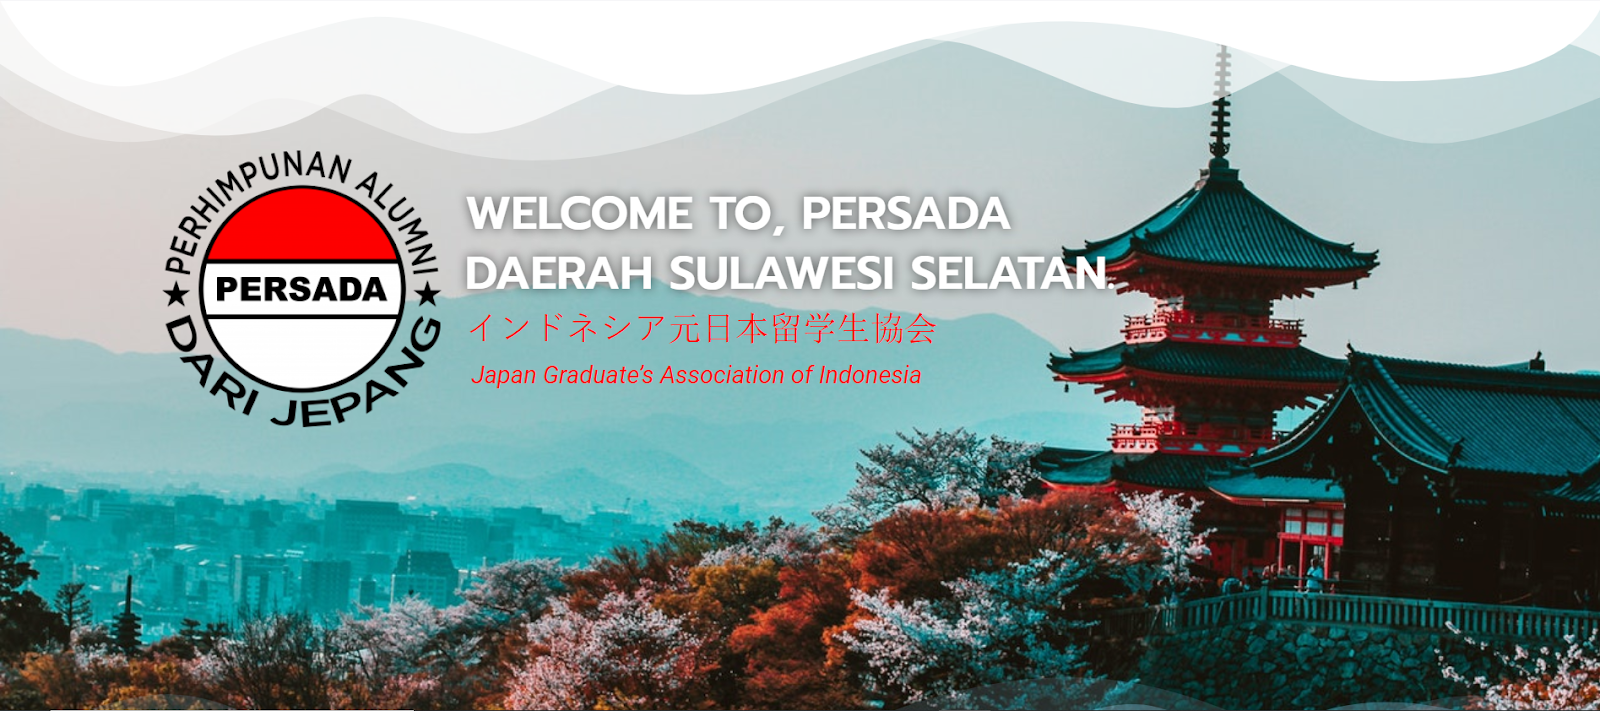 Selamat Datang di Persada Daerah Sulawesi Selatan